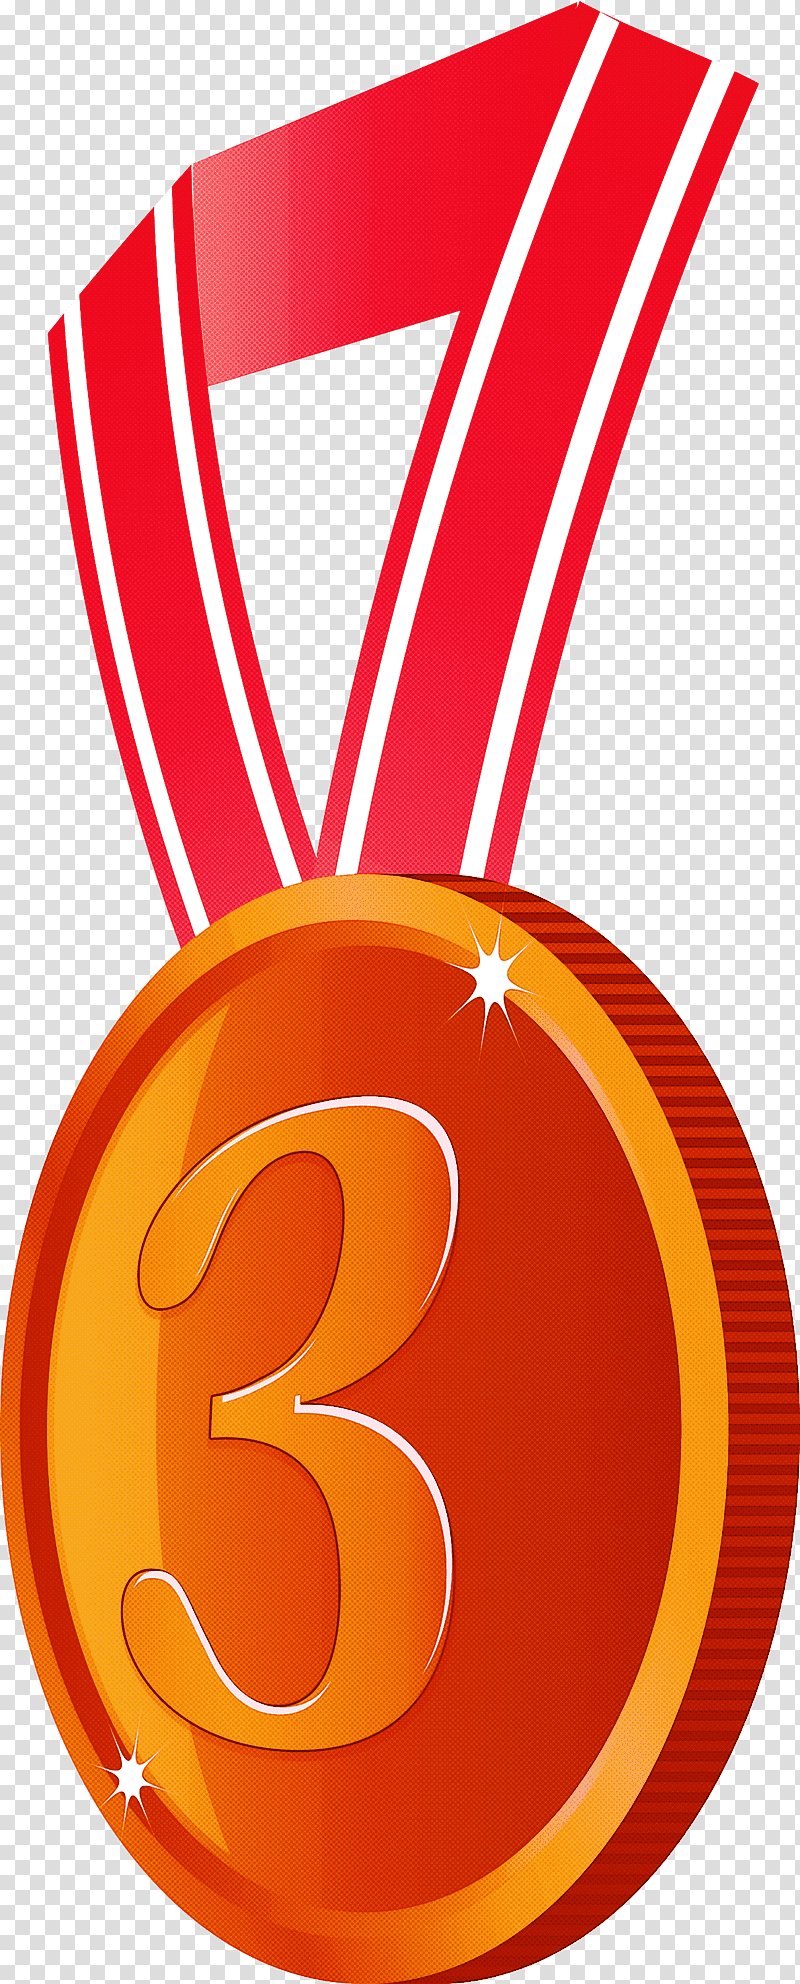 Brozen Badge Award Badge, Medal, Gold Medal, Red, Orange, Magenta, Logo transparent background PNG clipart